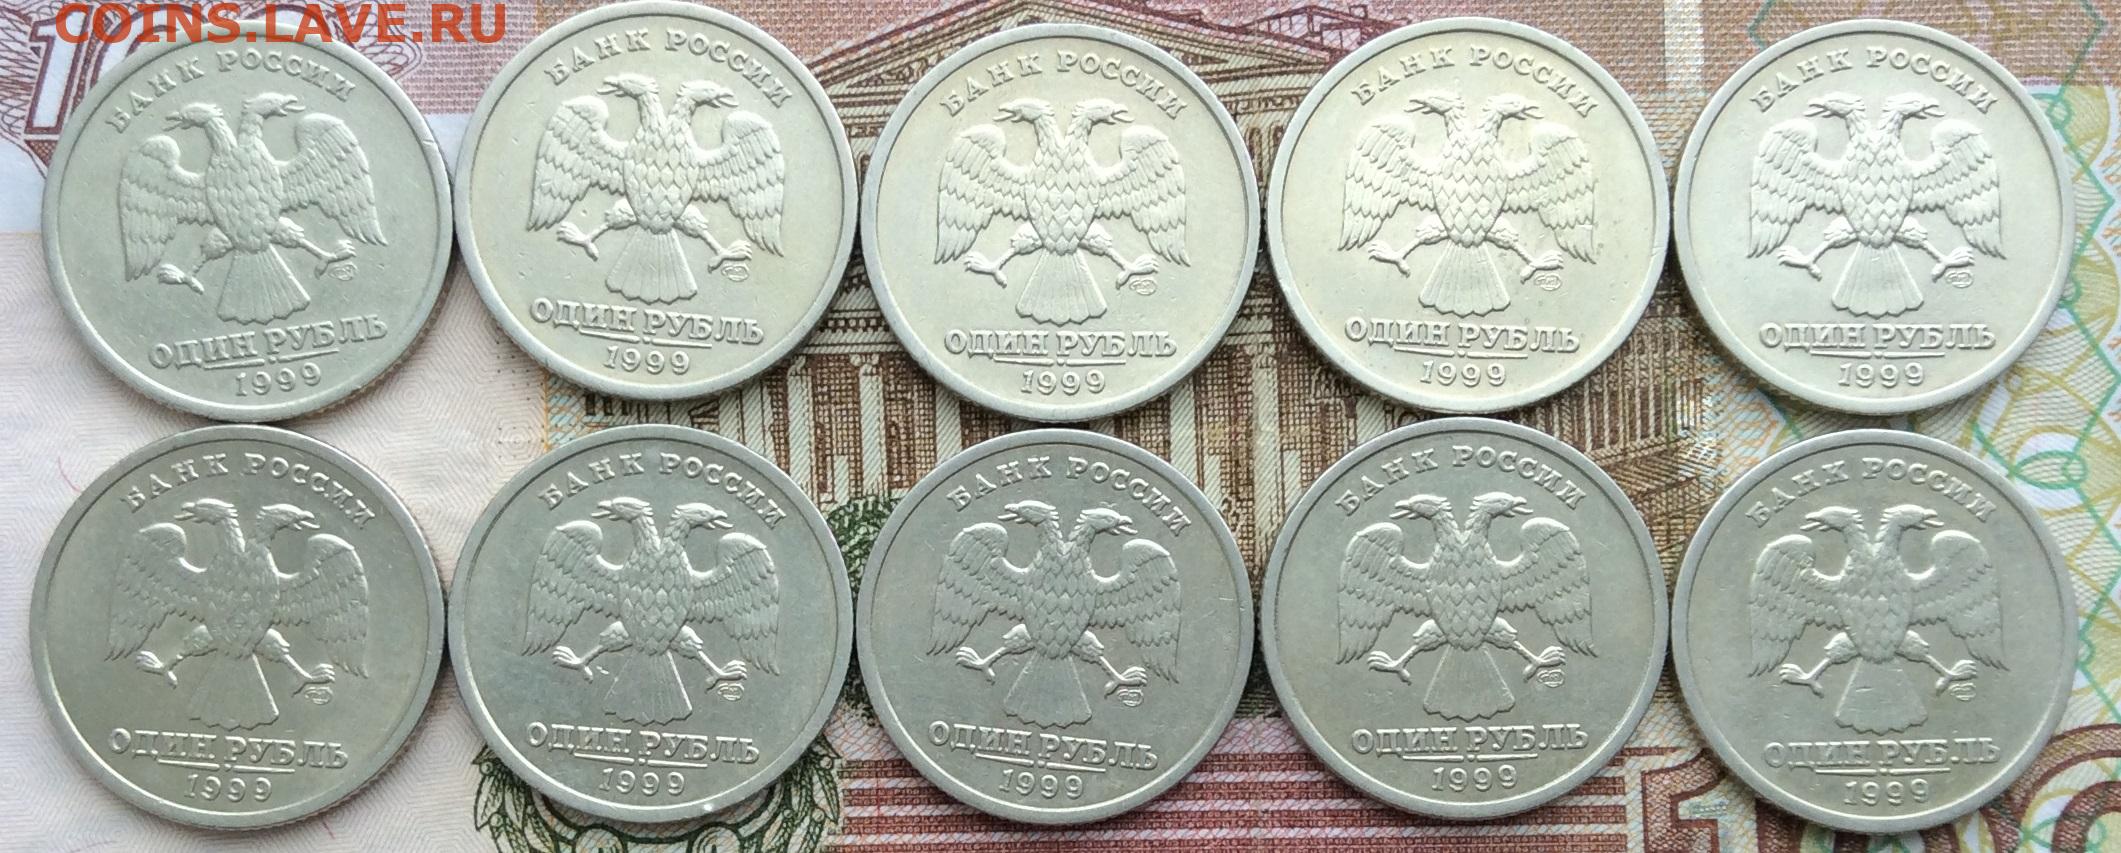 1 199 в рублях. 1 Рубль 199 Пушкин СПМД фото. 2 Рублевый Пушкин. 1 Рубль Пушкин 1999 цена стоимость монеты.